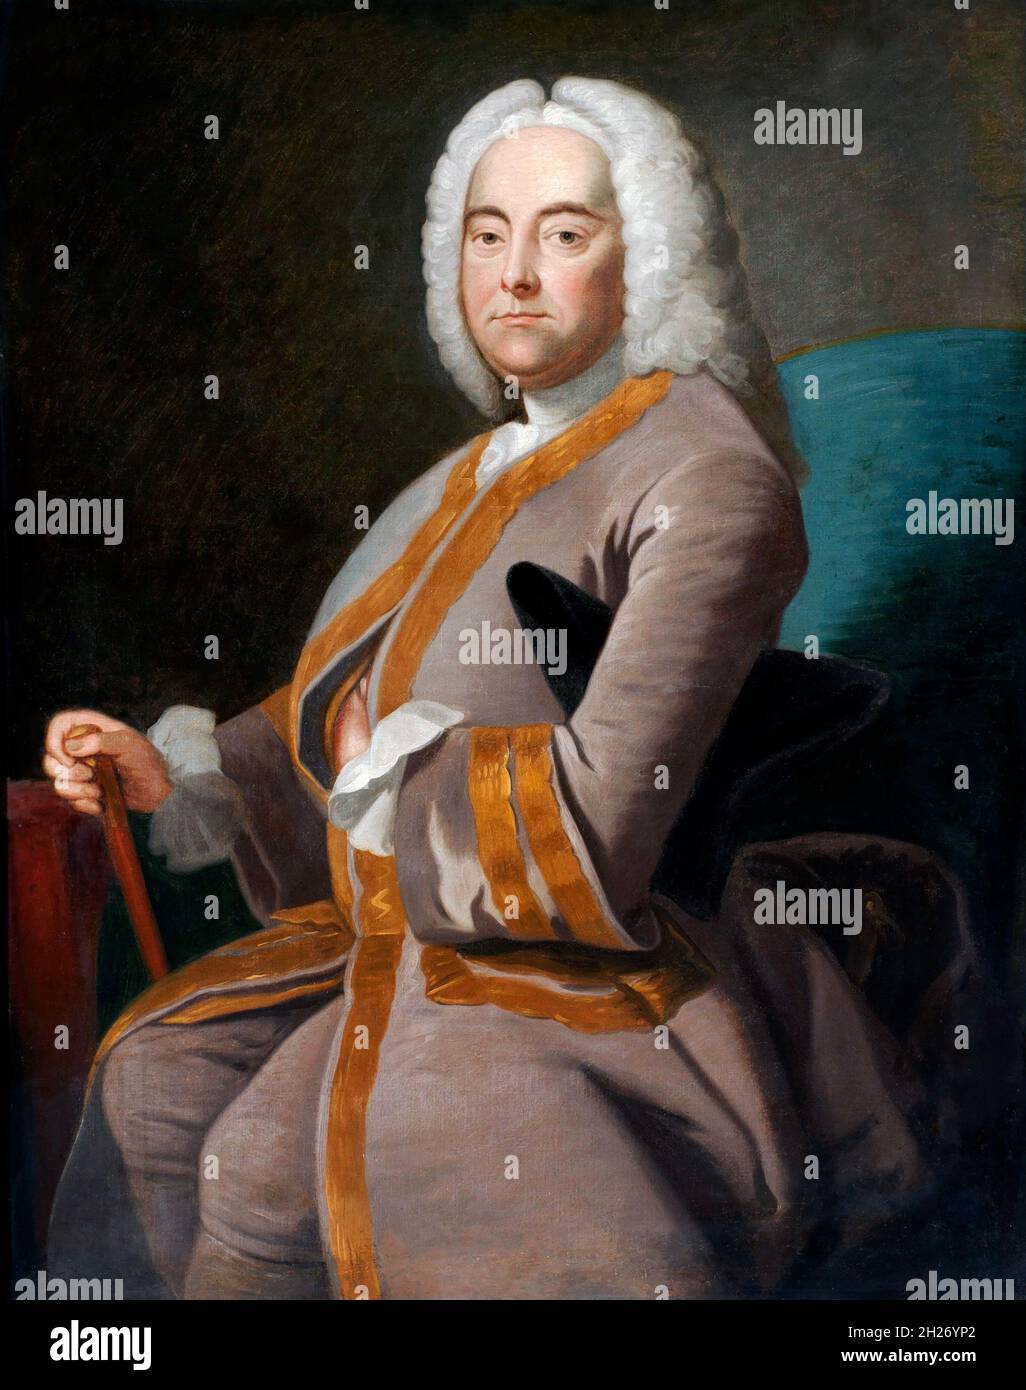 George Frideric (oder Frederick) Händel (1685-1759), Porträt nach Thomas Hudson, Öl auf Leinwand, nach 1756. Händel war ein deutscher, später britischer Barockkomponist, der den Großteil seiner Karriere in London verbrachte und für seine Opern, Oratorien, Hymnen und Orgelkonzerte bekannt wurde und dessen berühmtestes Werk der Messias ist. Stockfoto